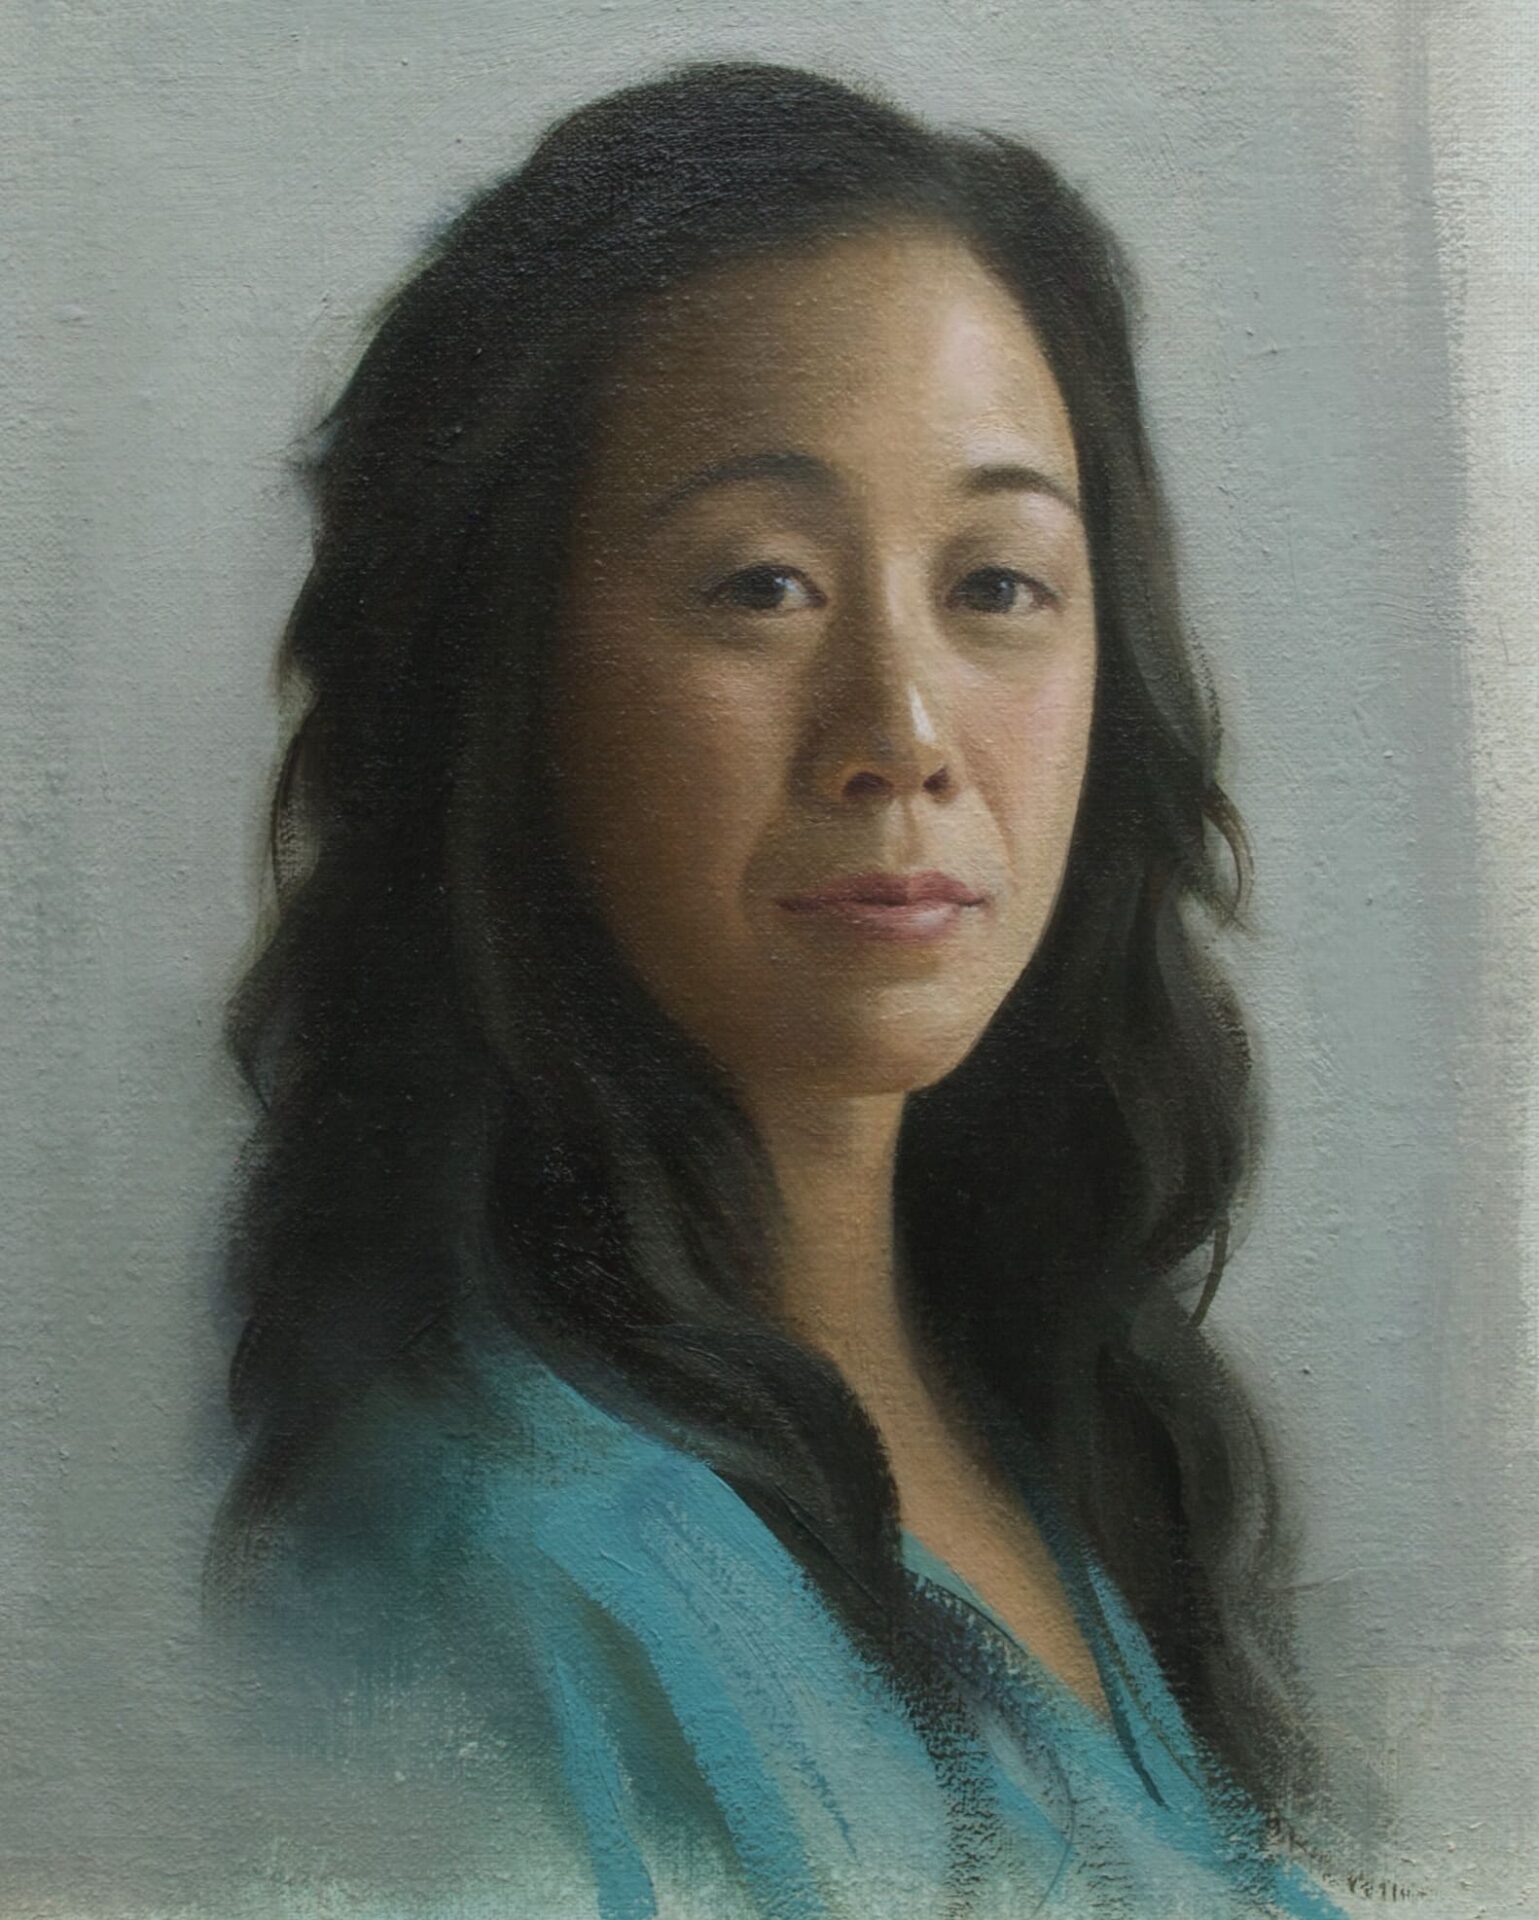 A woman’s portrait painting